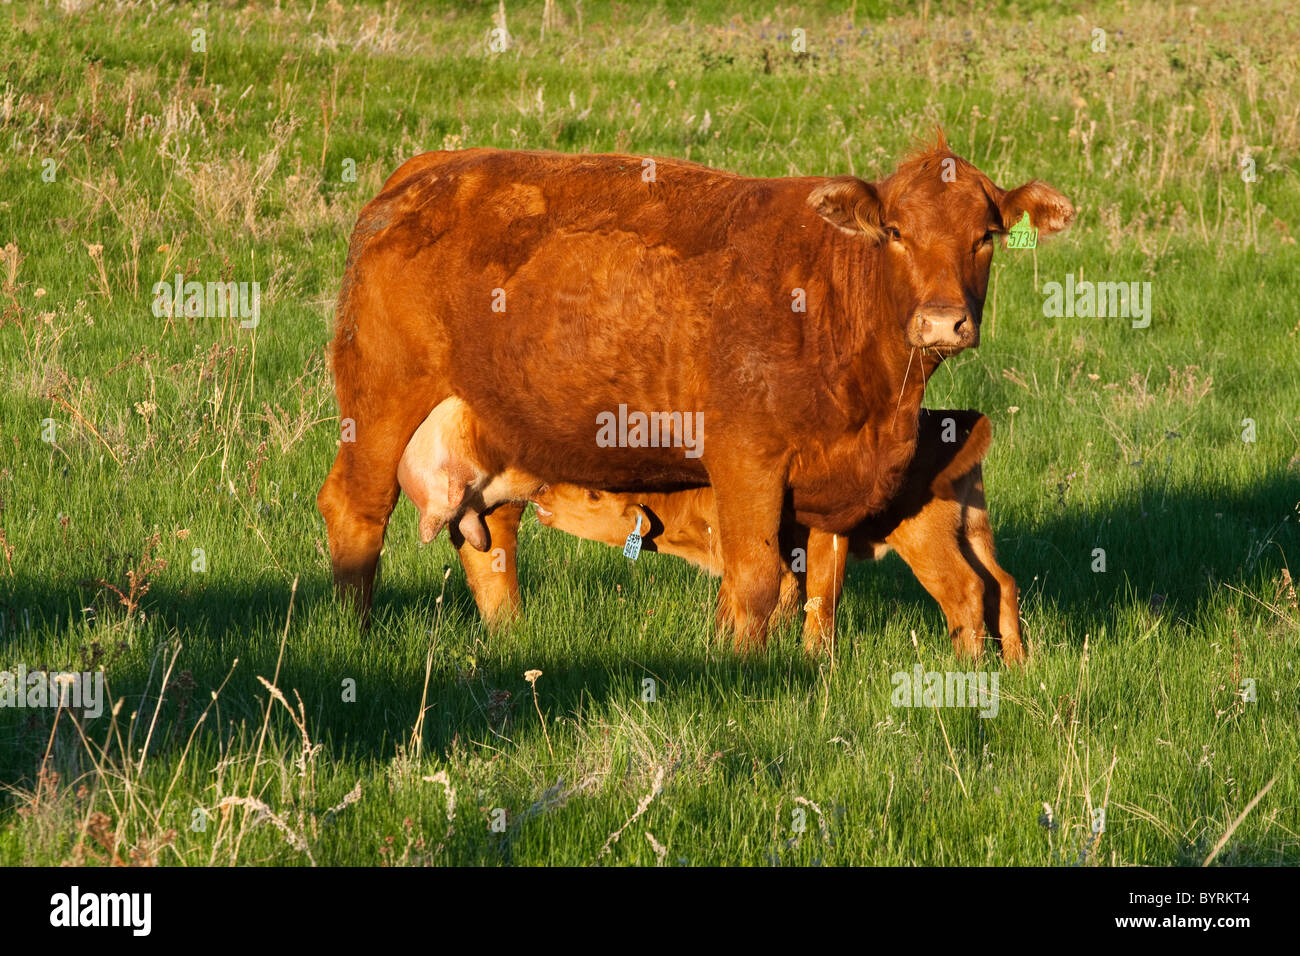 - Un élevage de boeuf Angus rouge vache avec son veau sur un vert Pâturage / de l'Alberta, au Canada. Banque D'Images